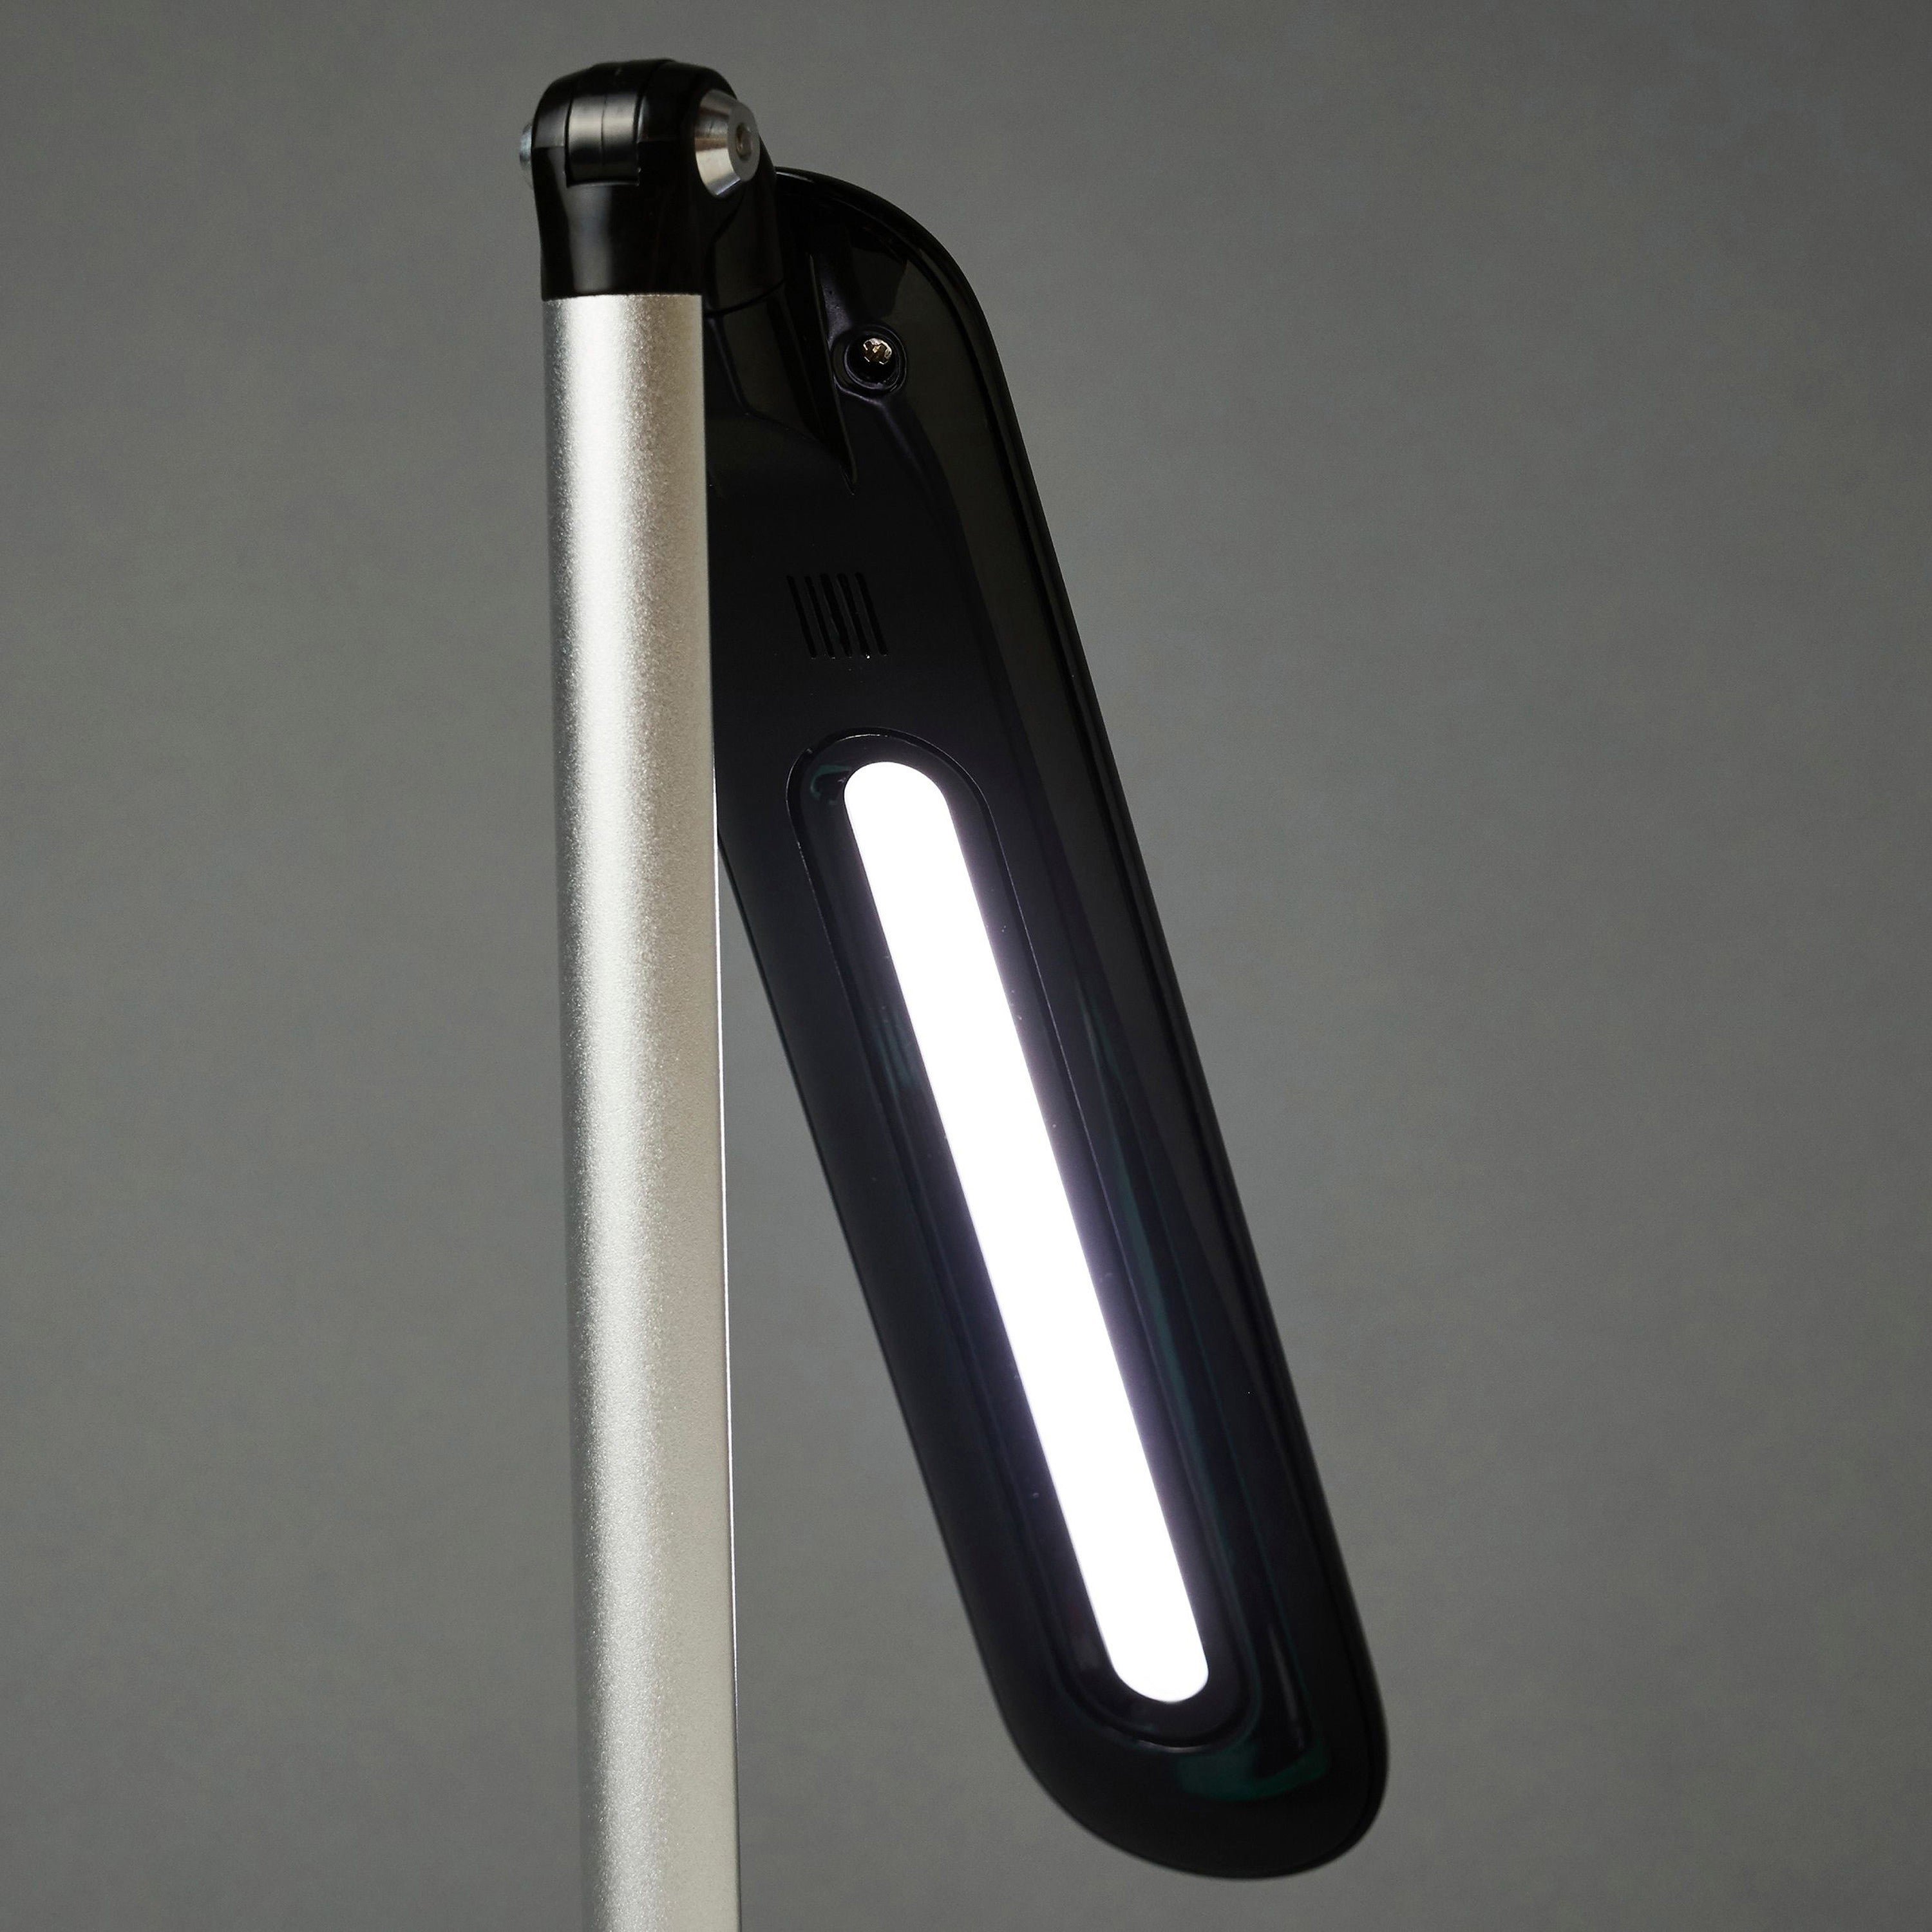 ottlite-wellness-desk-lamp-8-w-led-bulb-touch-activated-adjustable-arm-usb-charging-adjustable-brightness-adjustable-shade-450-lm-lumens-desk-mountable-black-black-for-tablet-phone_ottf1by9g59shpr - 4